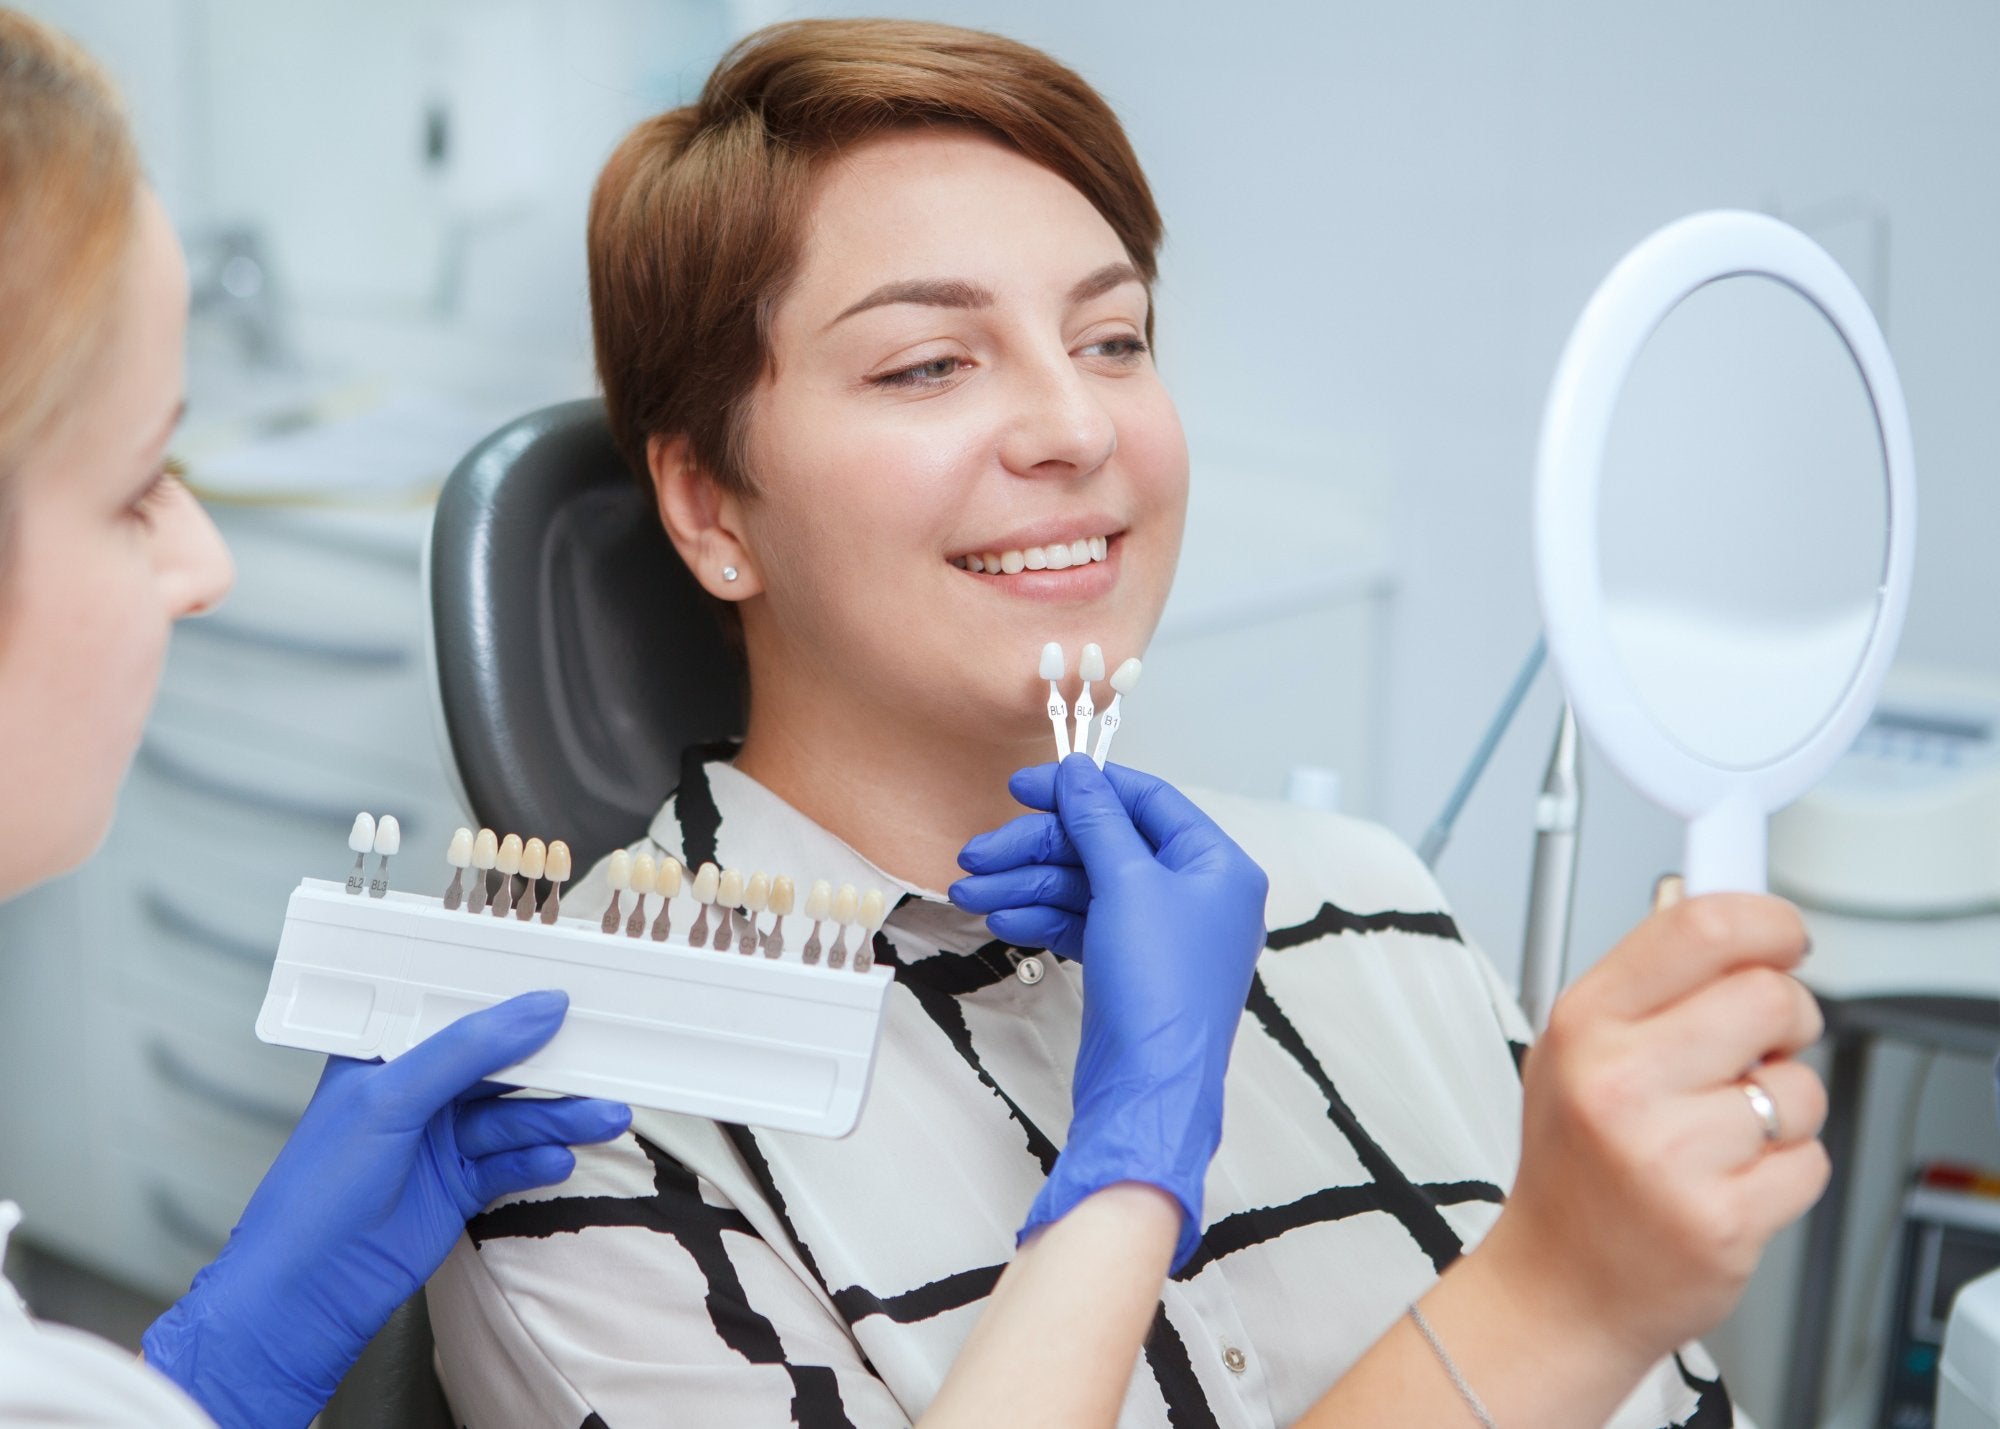 Achieve a White Smile Through a Comfortable Teeth Whitening Treatment | MySmile - MySmile